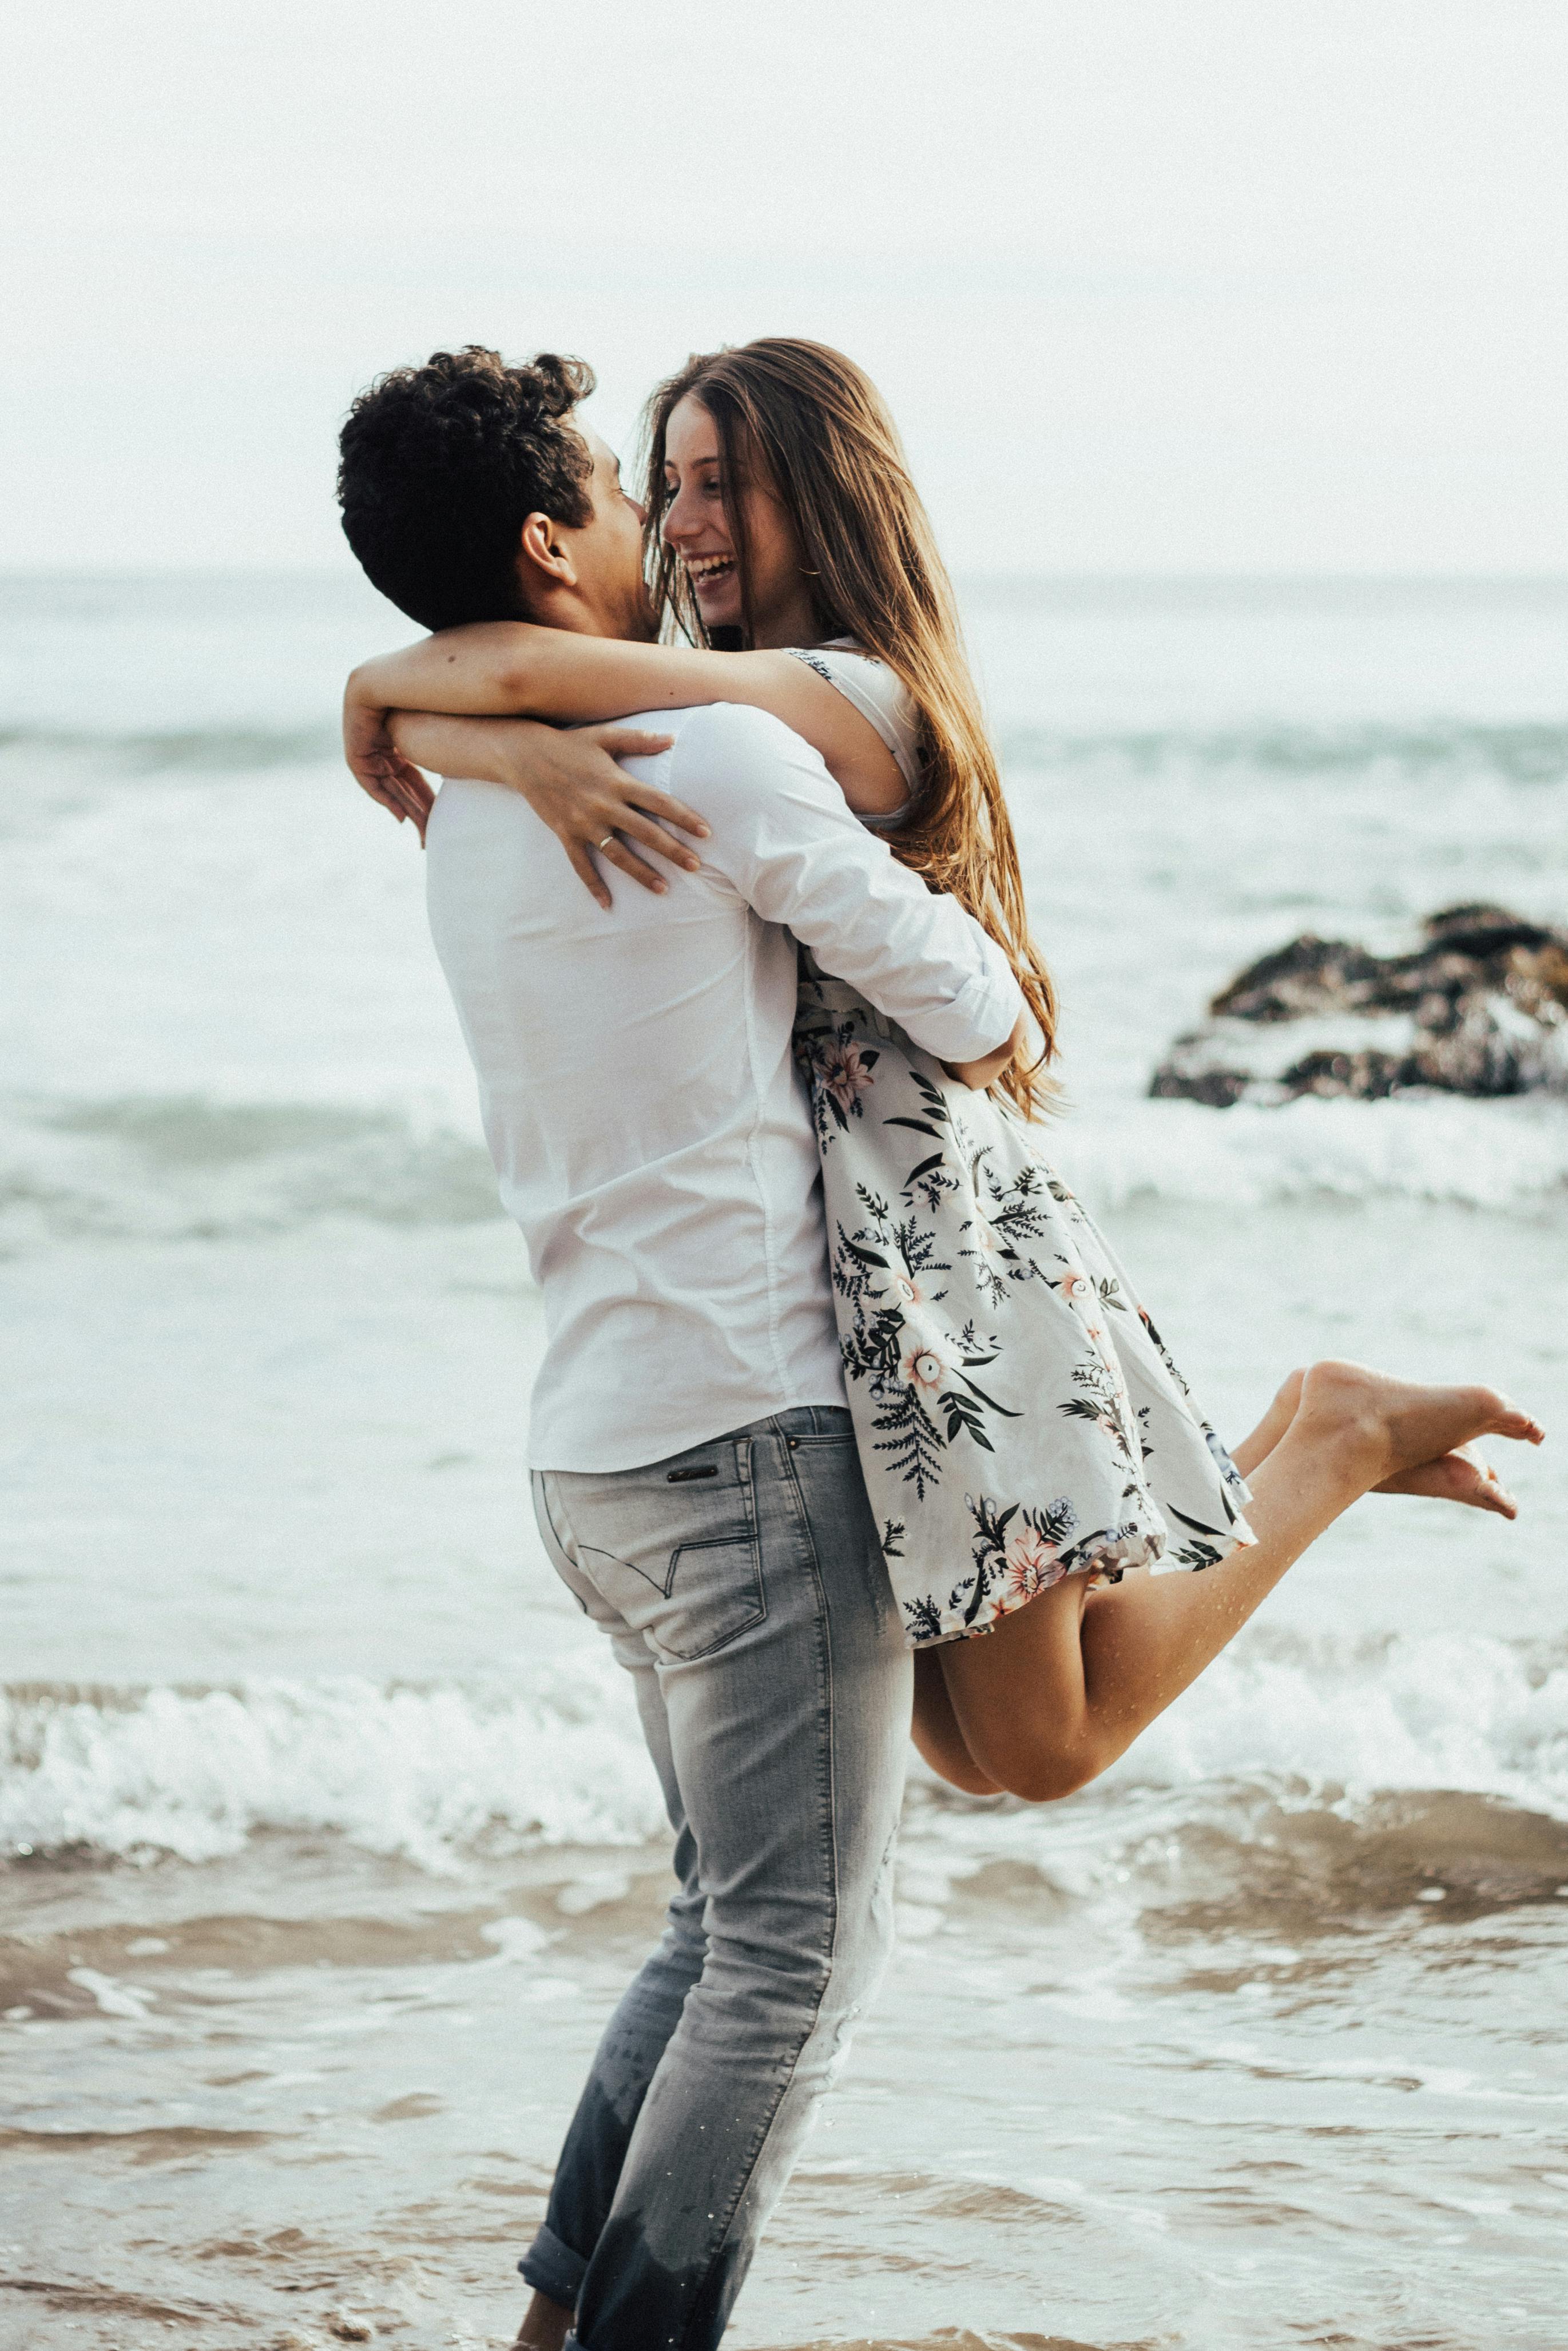 Pareja feliz abrazándose en la playa | Fuente: Pexels